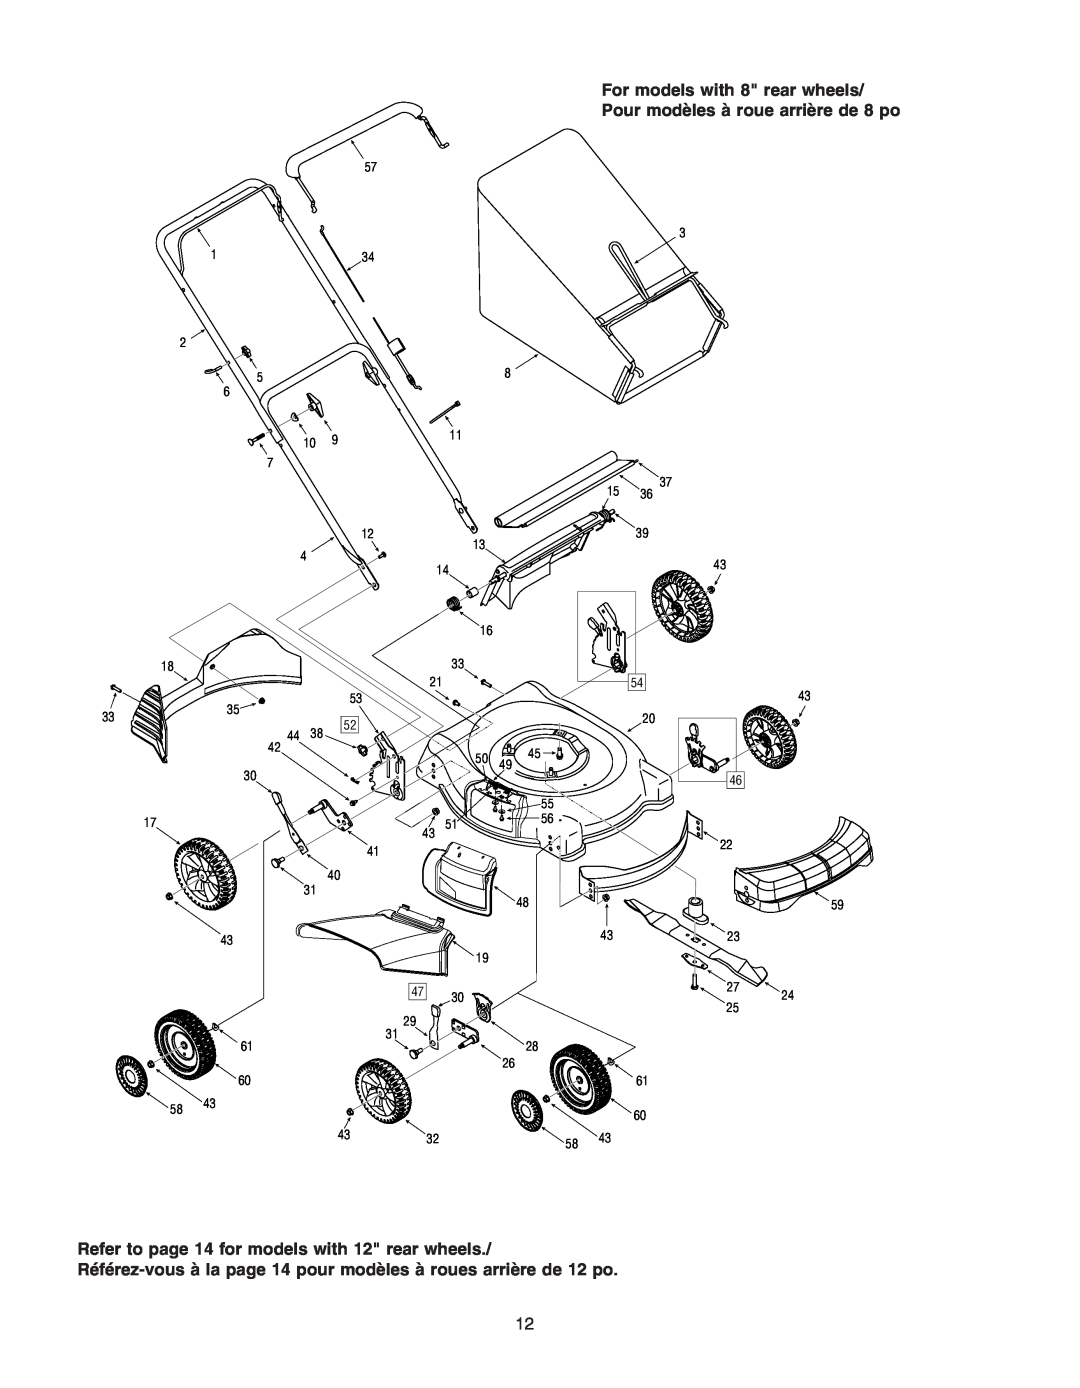 Troy-Bilt 400 Series manual For models with 8 rear wheels, Pour modèles à roue arrière de 8 po 